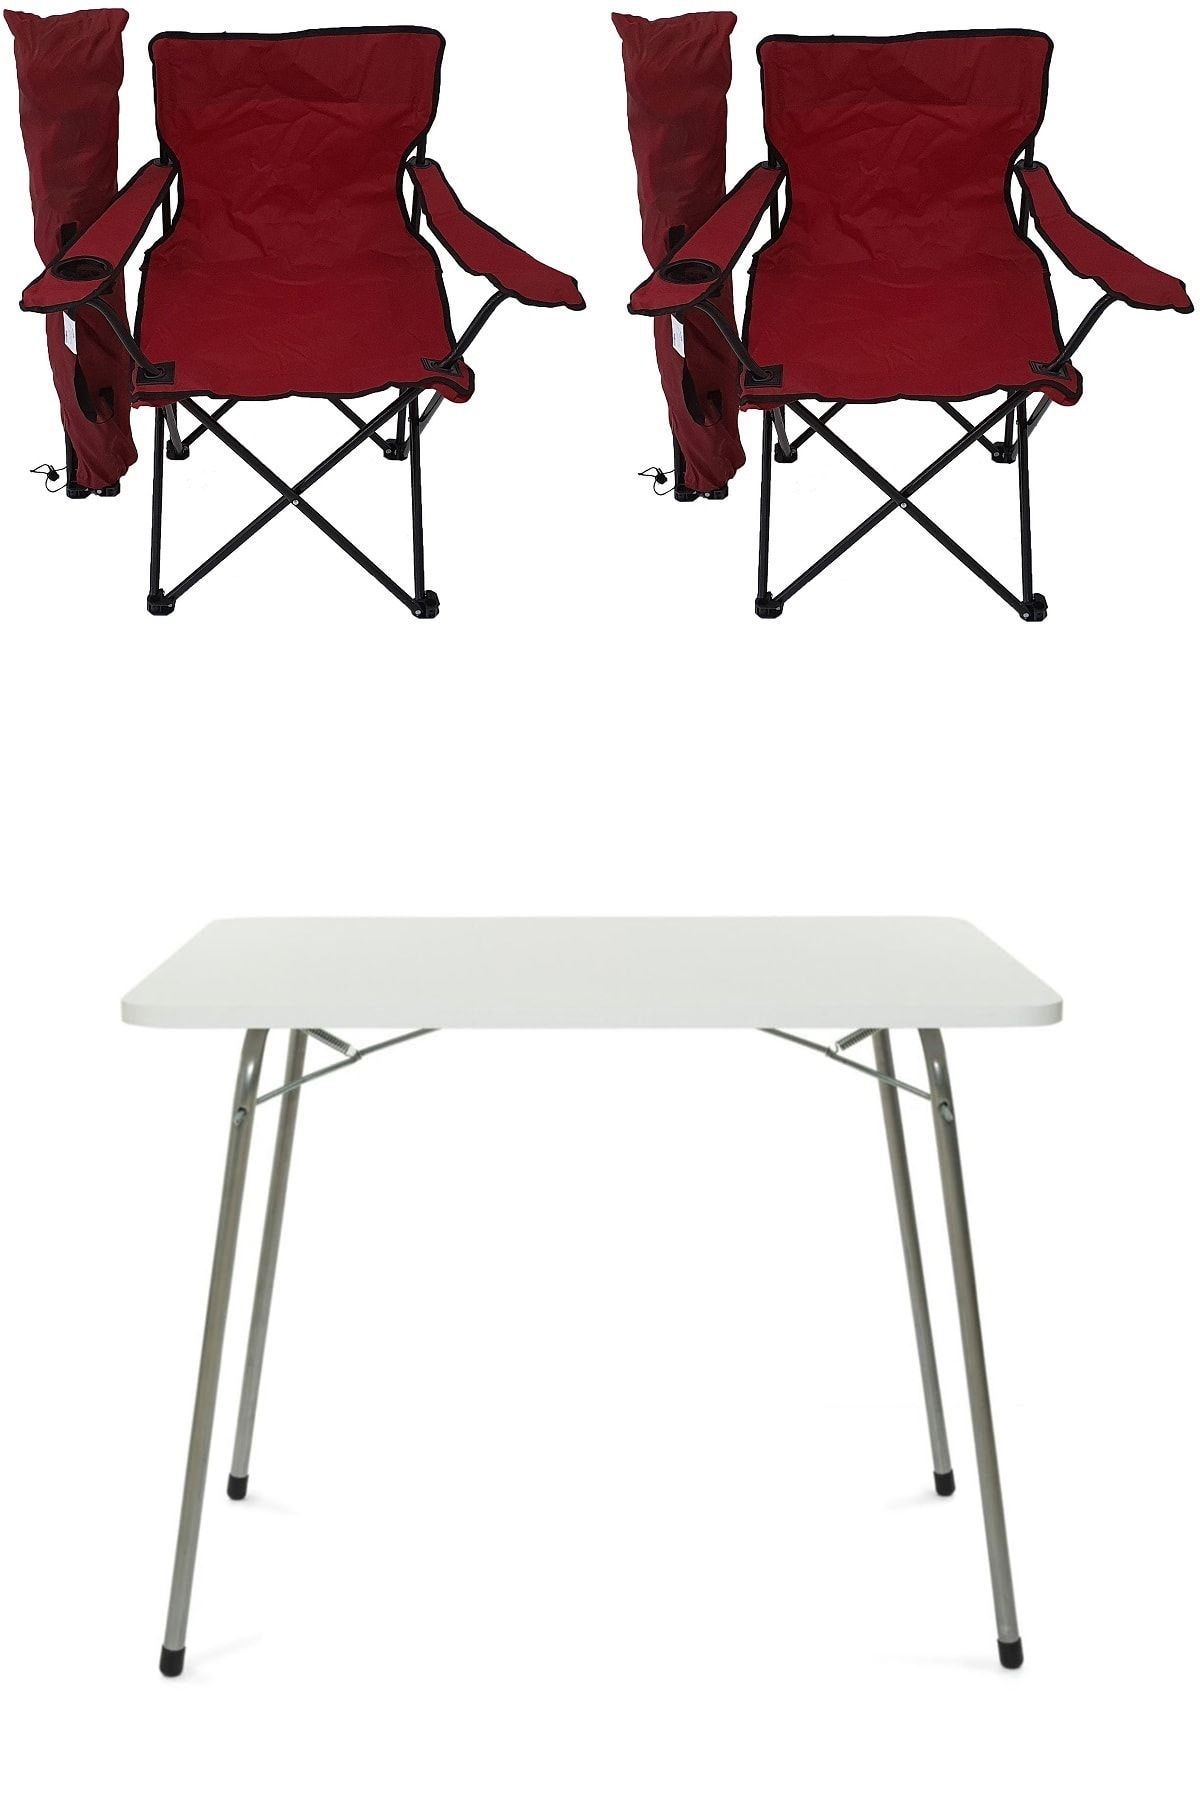 Bofigo Katlanır Masa + 2 Adet Kamp Sandalyesi Kırmızı